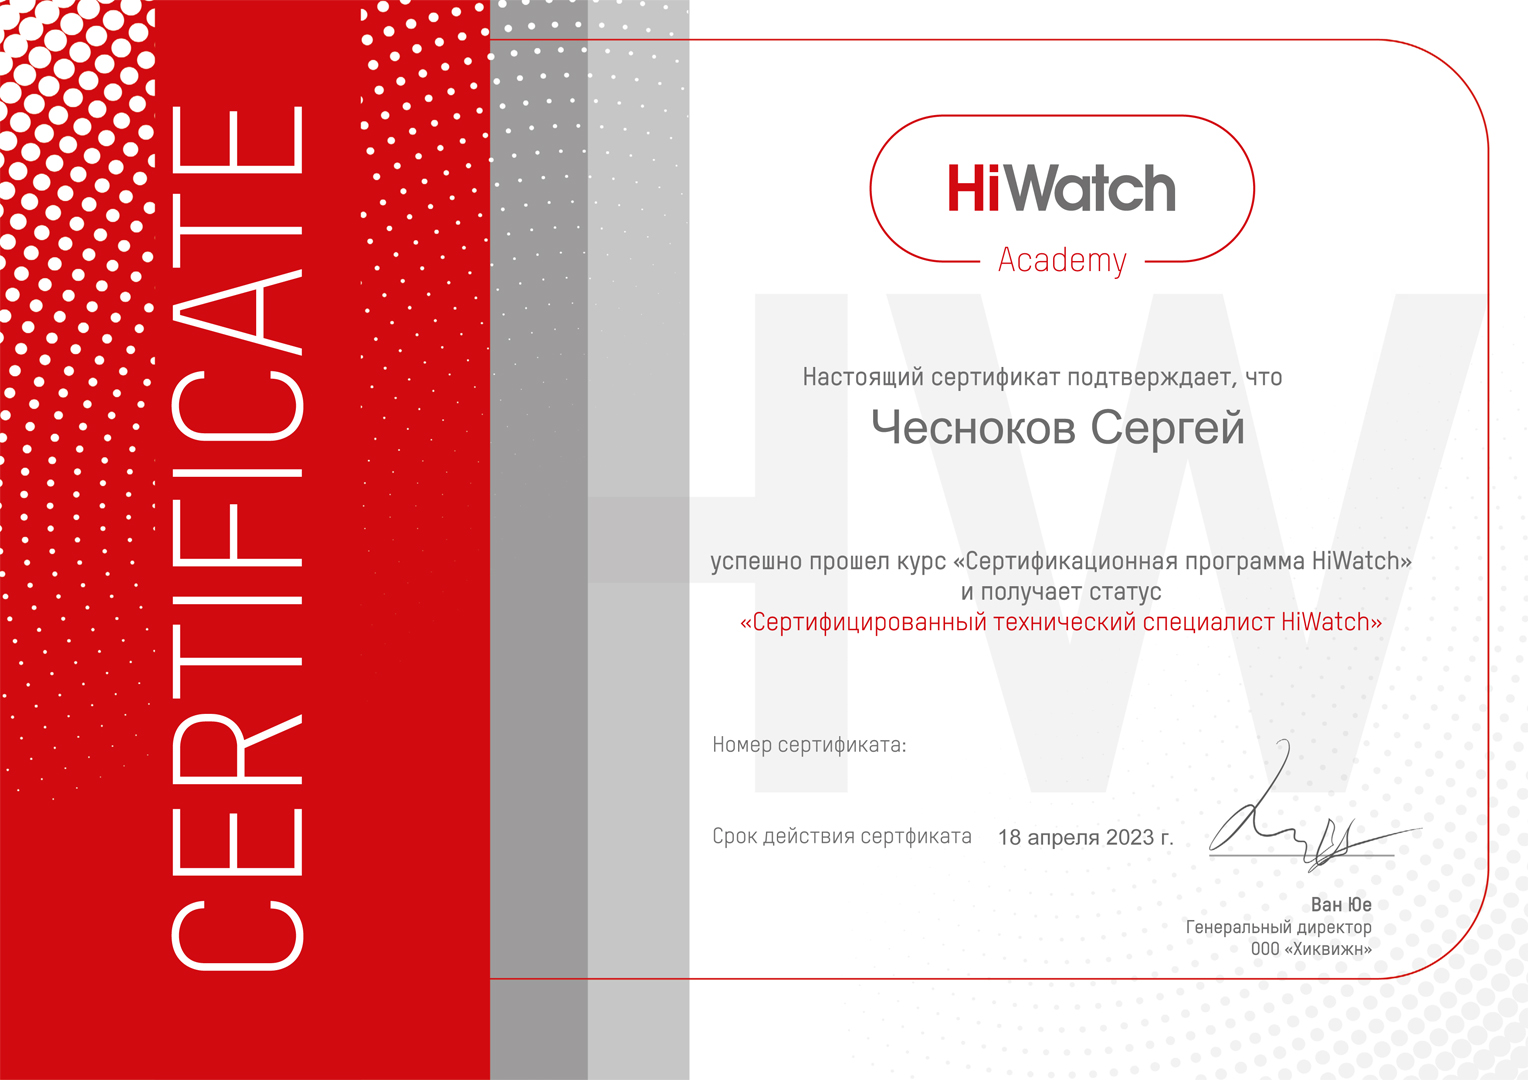 Чесноков С.С. - сертификат о прохождении курса "Сертификационная программа HiWatch"